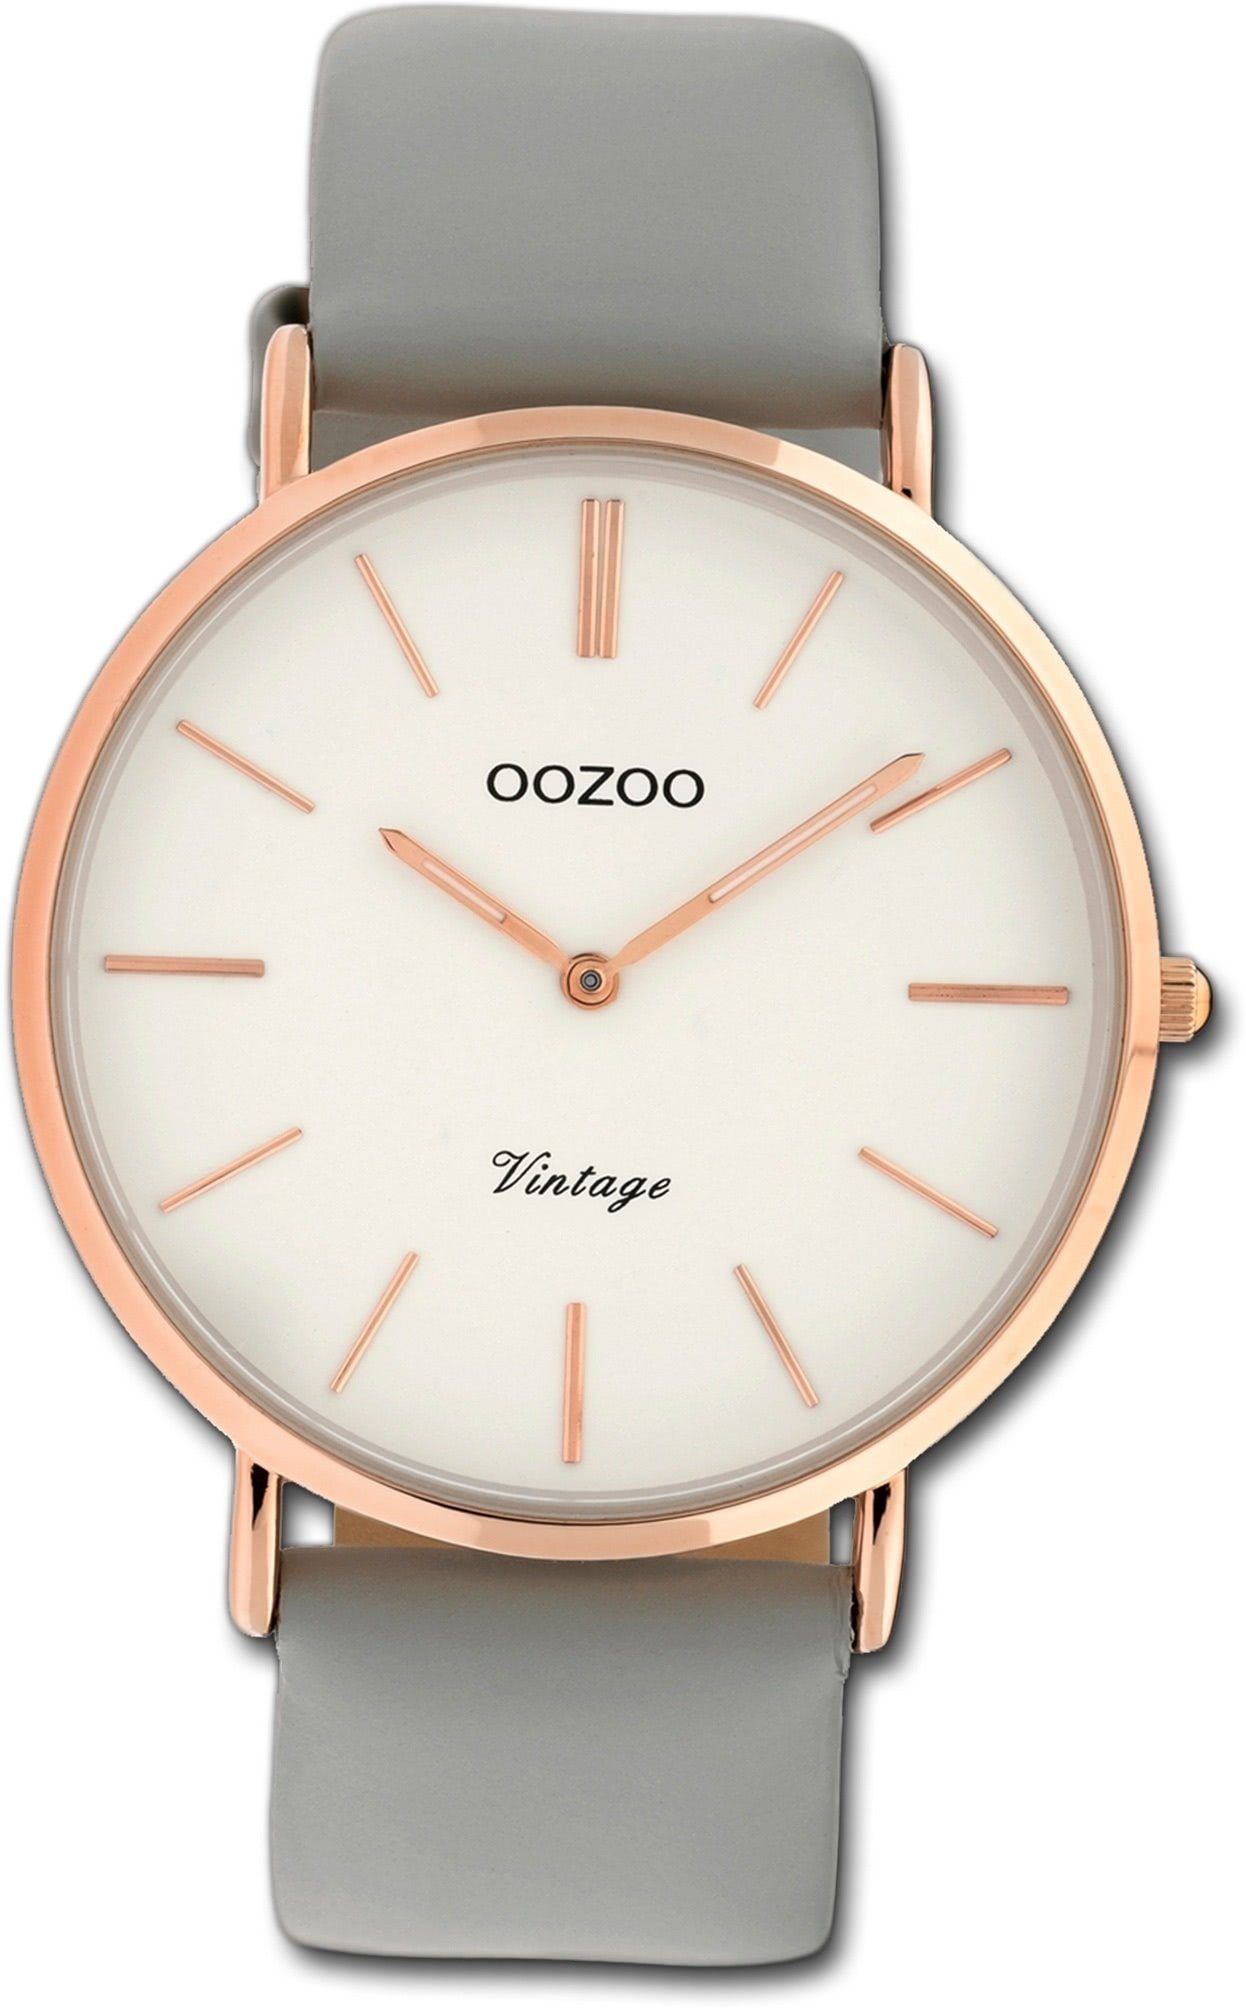 (ca. C9965 Oozoo Damen Leder OOZOO grau, Analog, Gehäuse, Quarzuhr Damenuhr 40mm) groß rundes Uhr Lederarmband